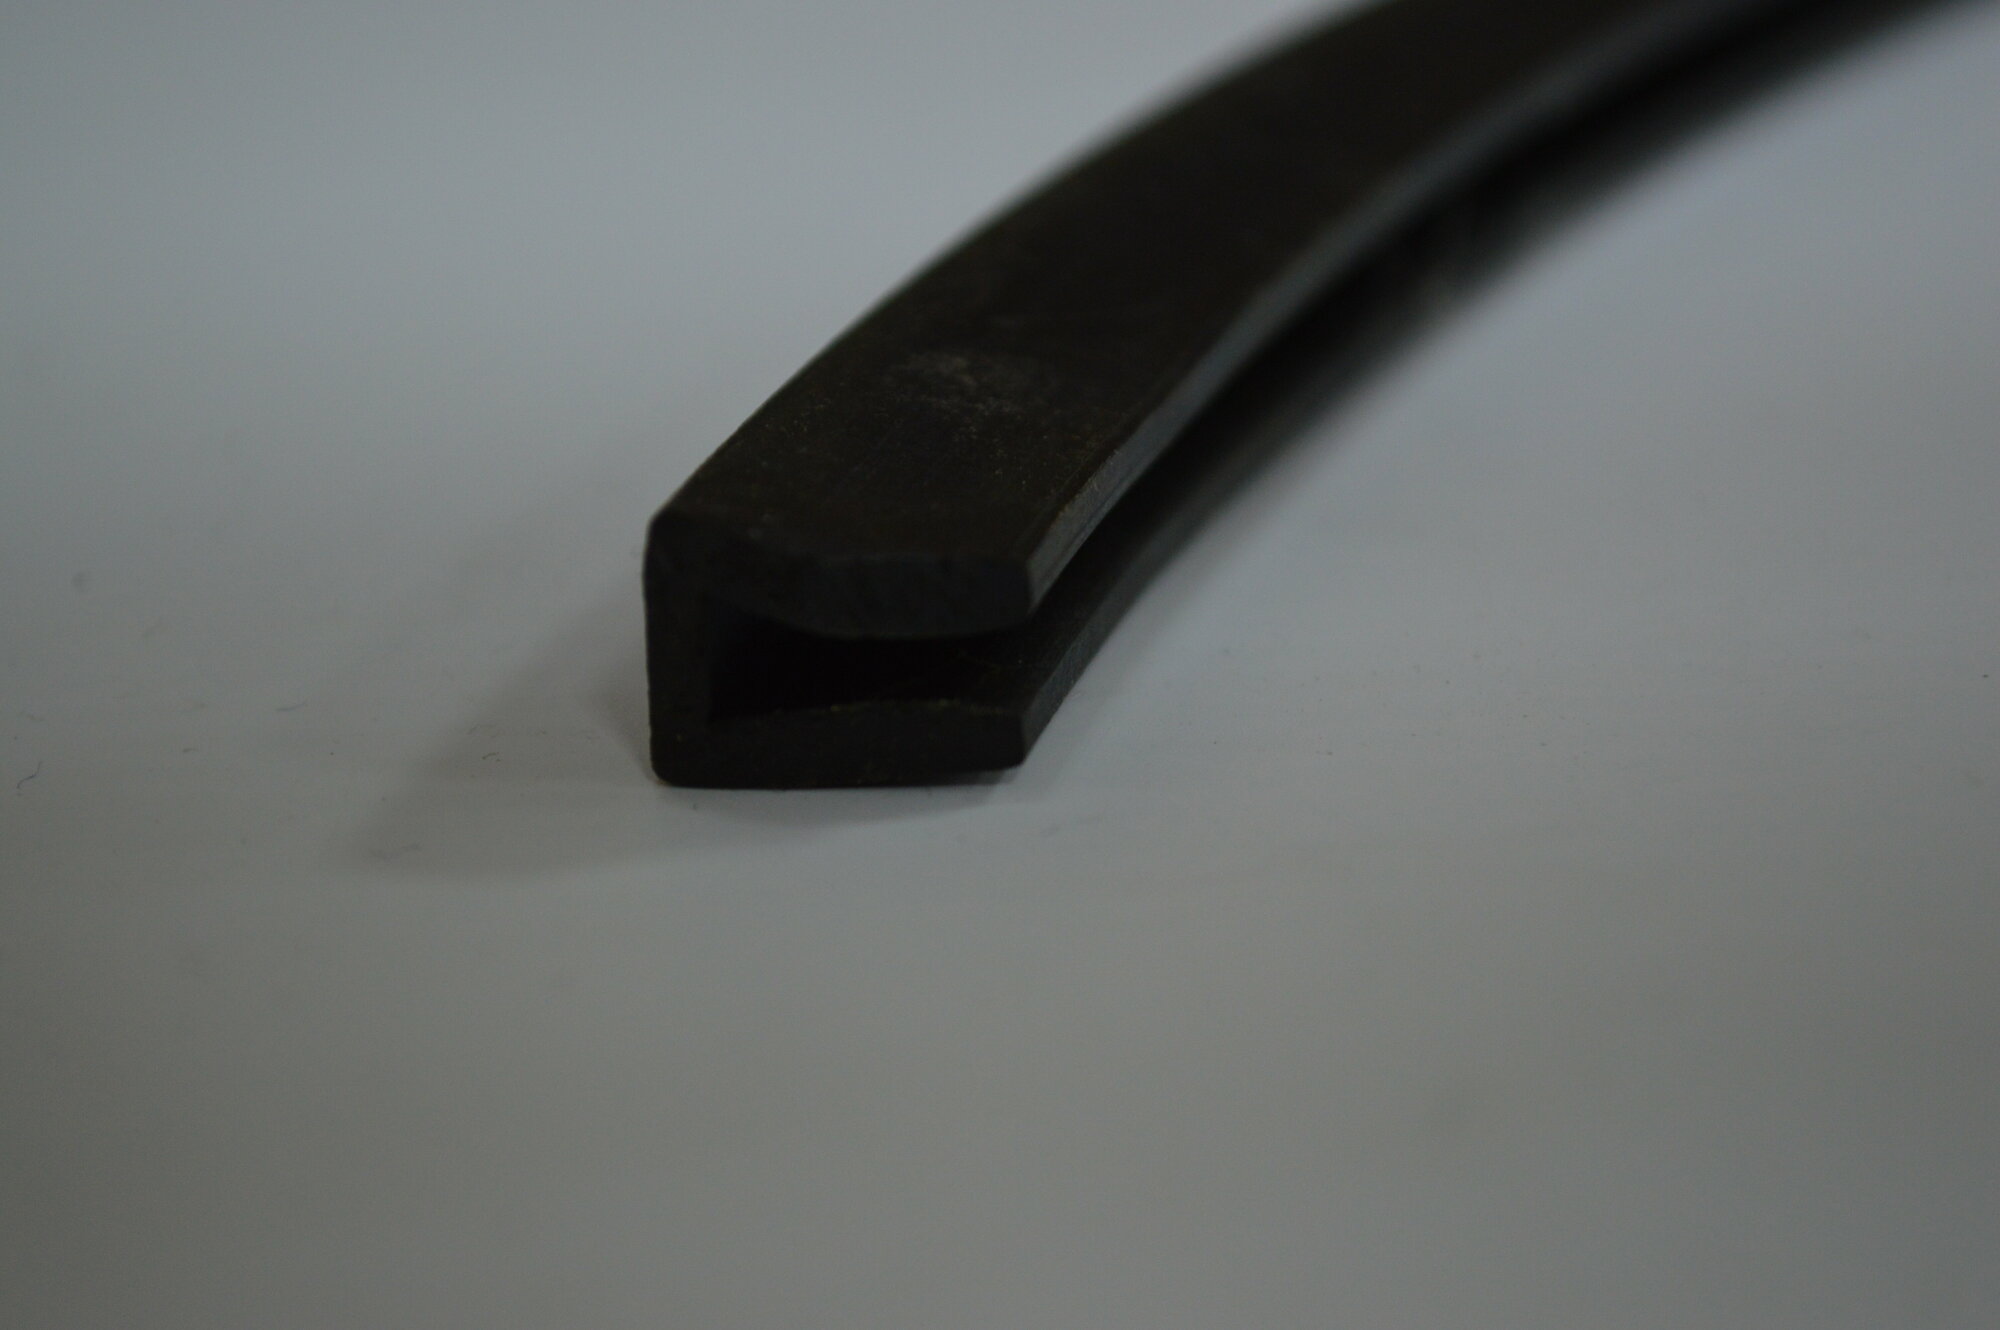 Профиль резиновый черный П-образный для уплотнения стекол и метала. Толщина стекла 2 мм. Длина 3 метра.